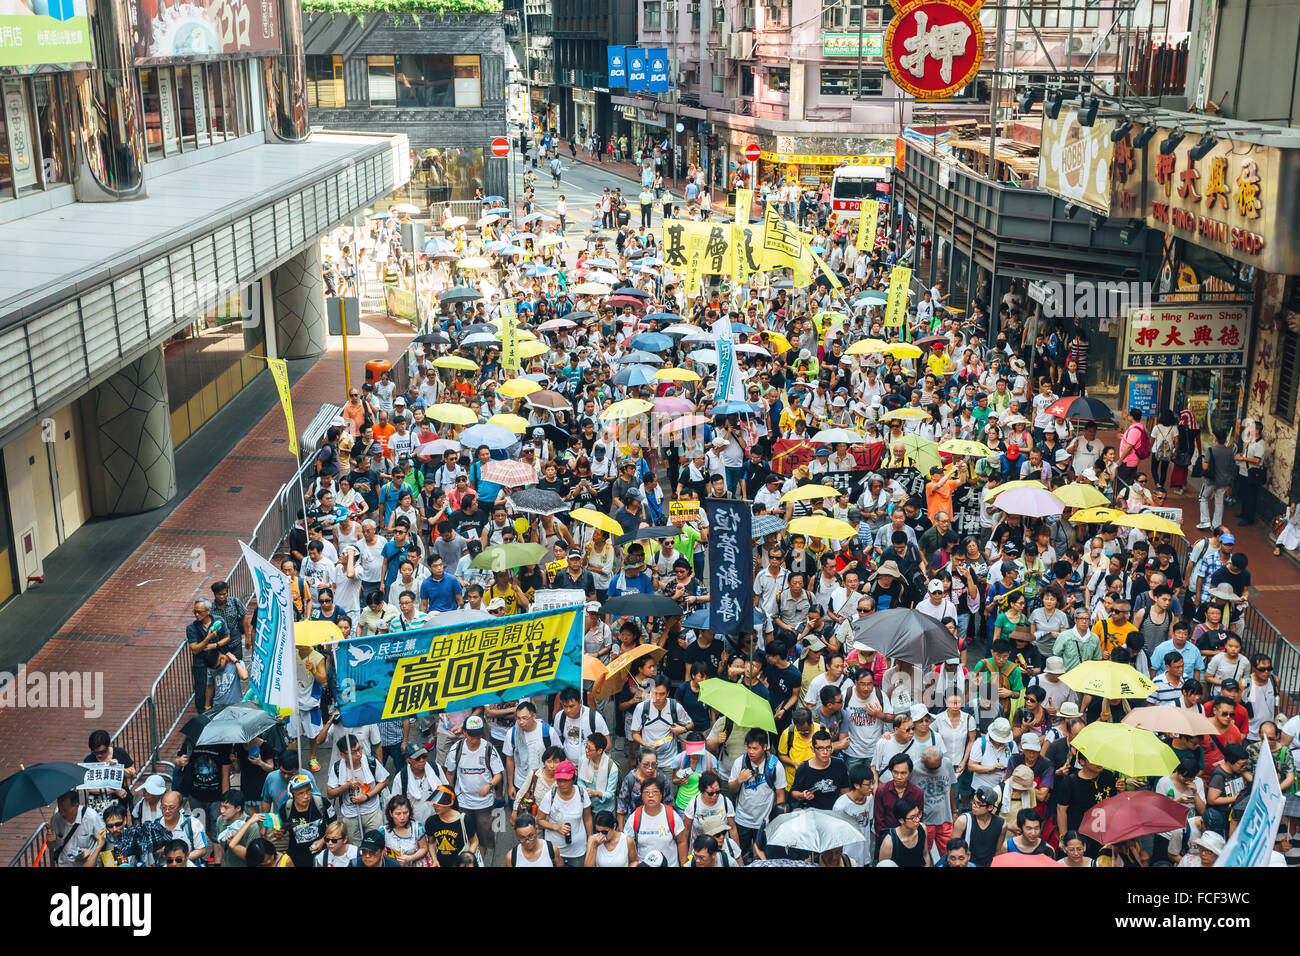 HONG KONG - 1 juillet : Hong Kong, les gens cherchent une plus grande démocratie comme frustration augmente avec l'influence de Pékin le 1 juillet 2015. Banque D'Images